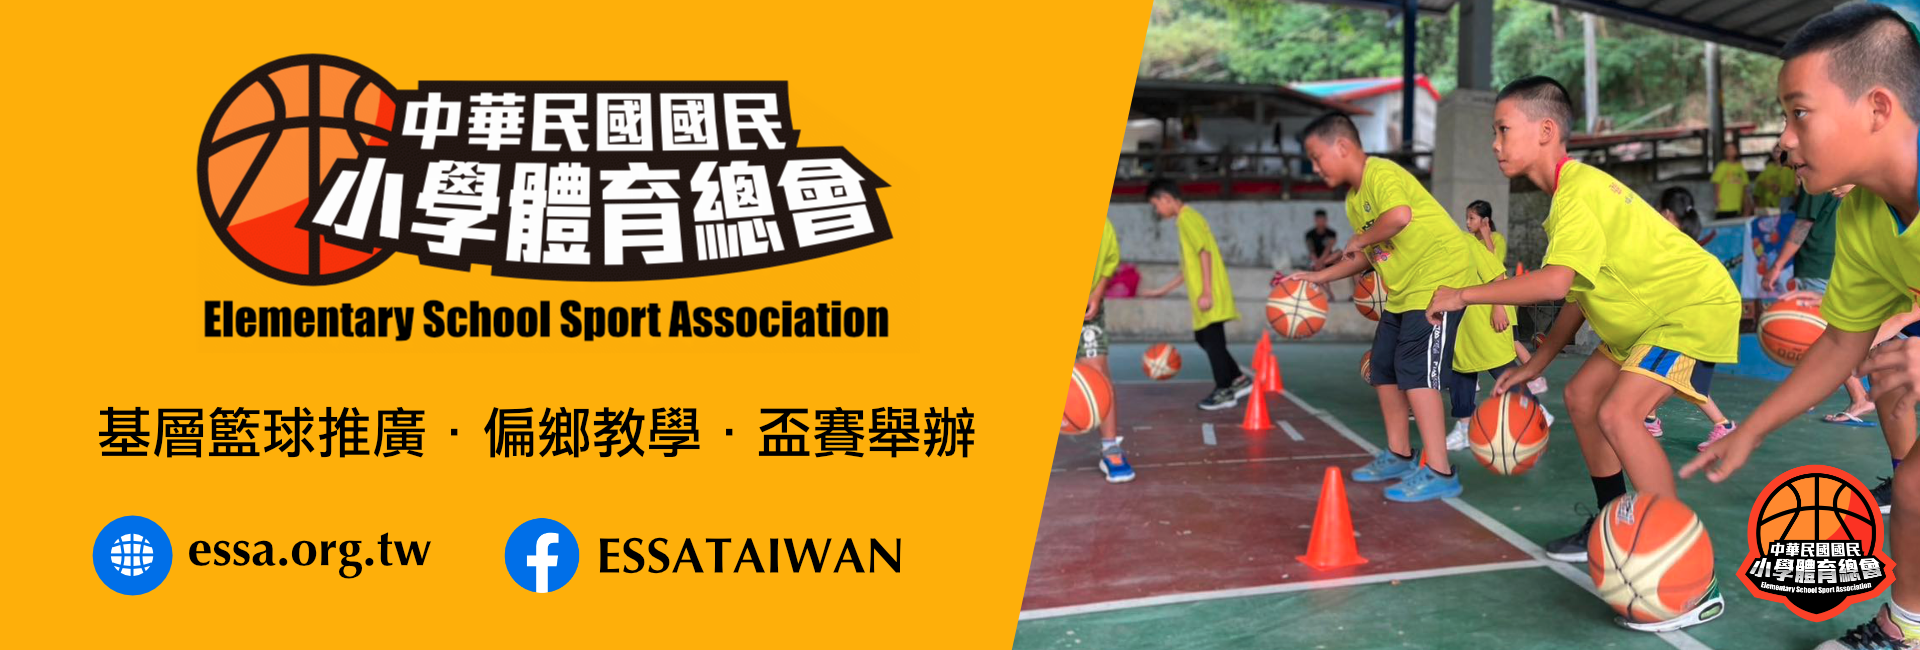 中華民國國民小學體育總會-募款活動